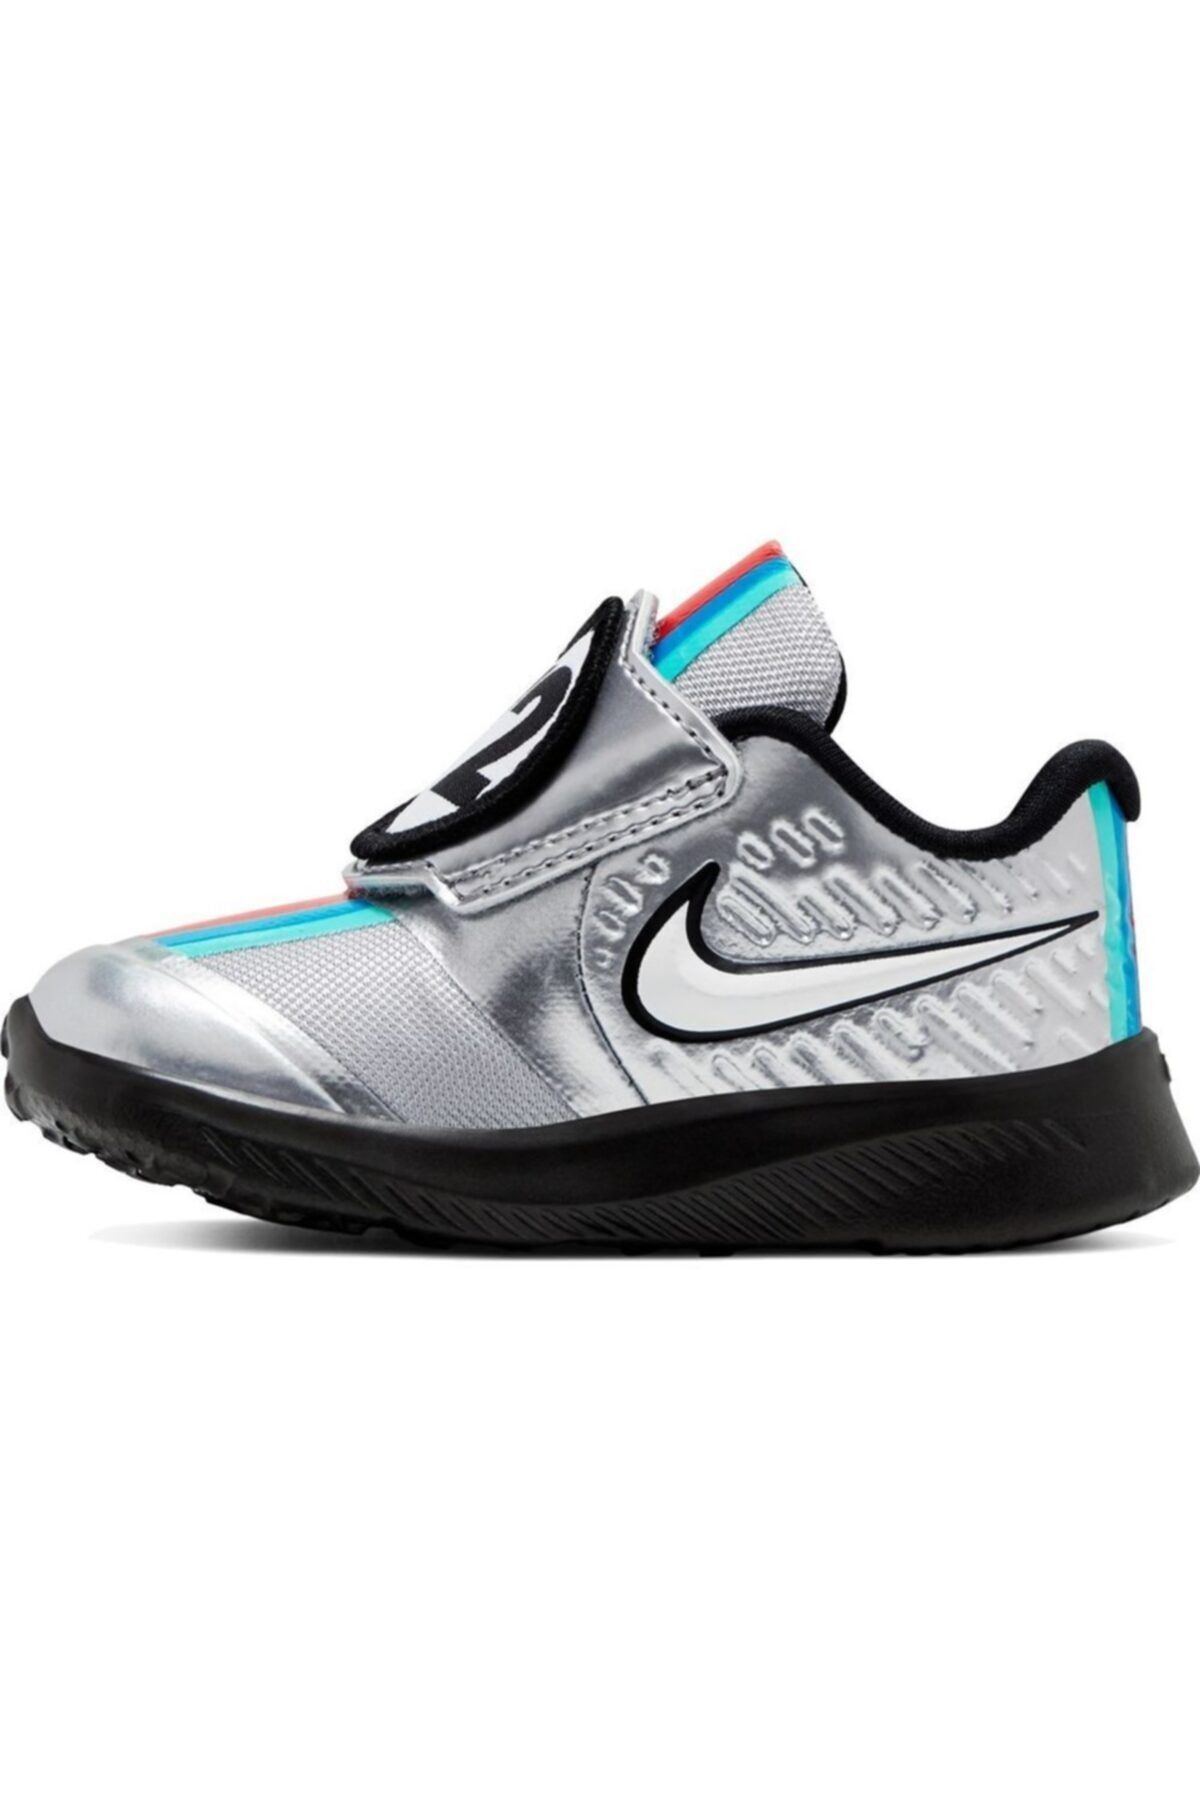 Nike Star Runner 2 Auto (Tdv) Çocuk Spor Ayakkabısı - Cq4223 001